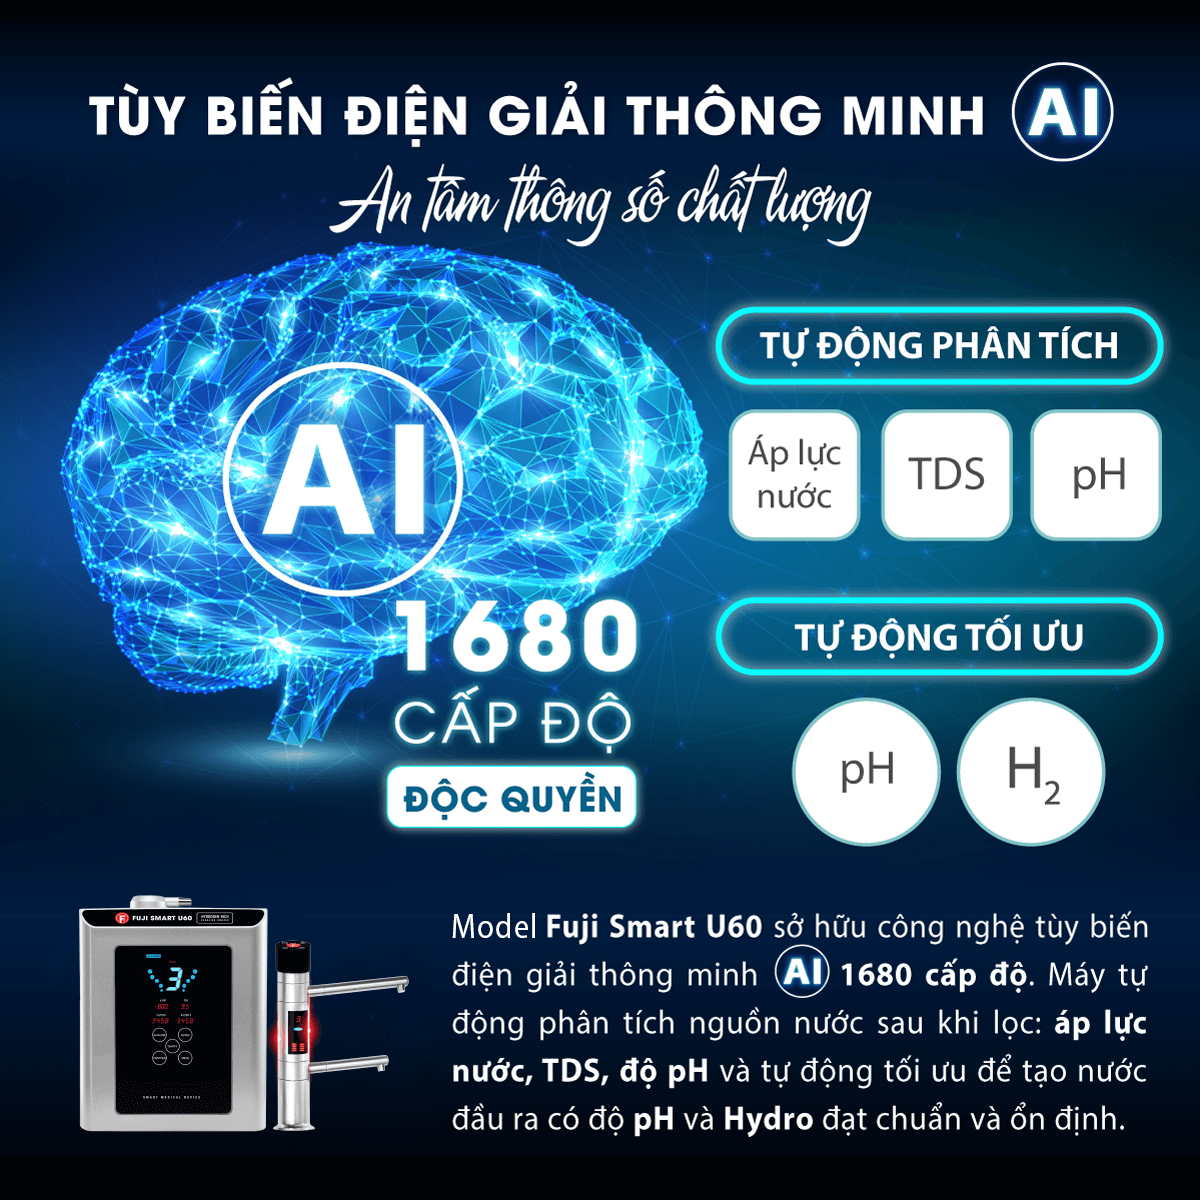 Máy điện giải Fuji Smart U60 sở hữu công nghệ tùy biến điện giải AI thông minh độc quyền với 1680 cấp độ